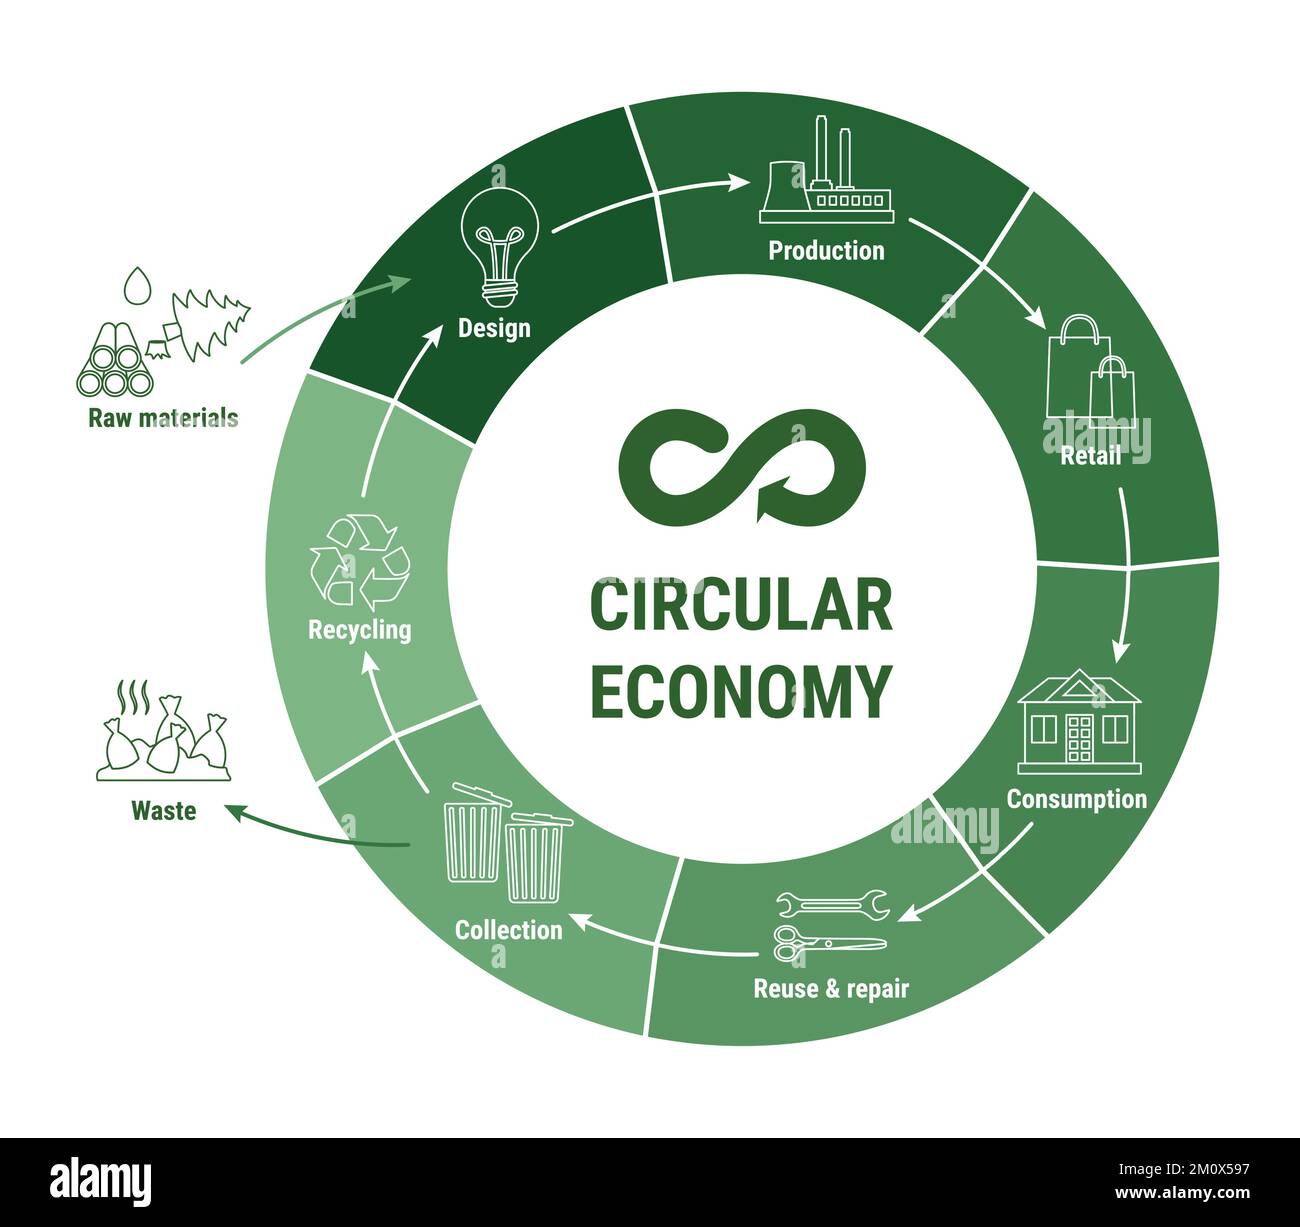 Infographie circulaire sur la ligne économique sur le schéma vert. Modèle commercial durable. Schéma du cycle de vie du produit de la matière première à la production, consommé Illustration de Vecteur